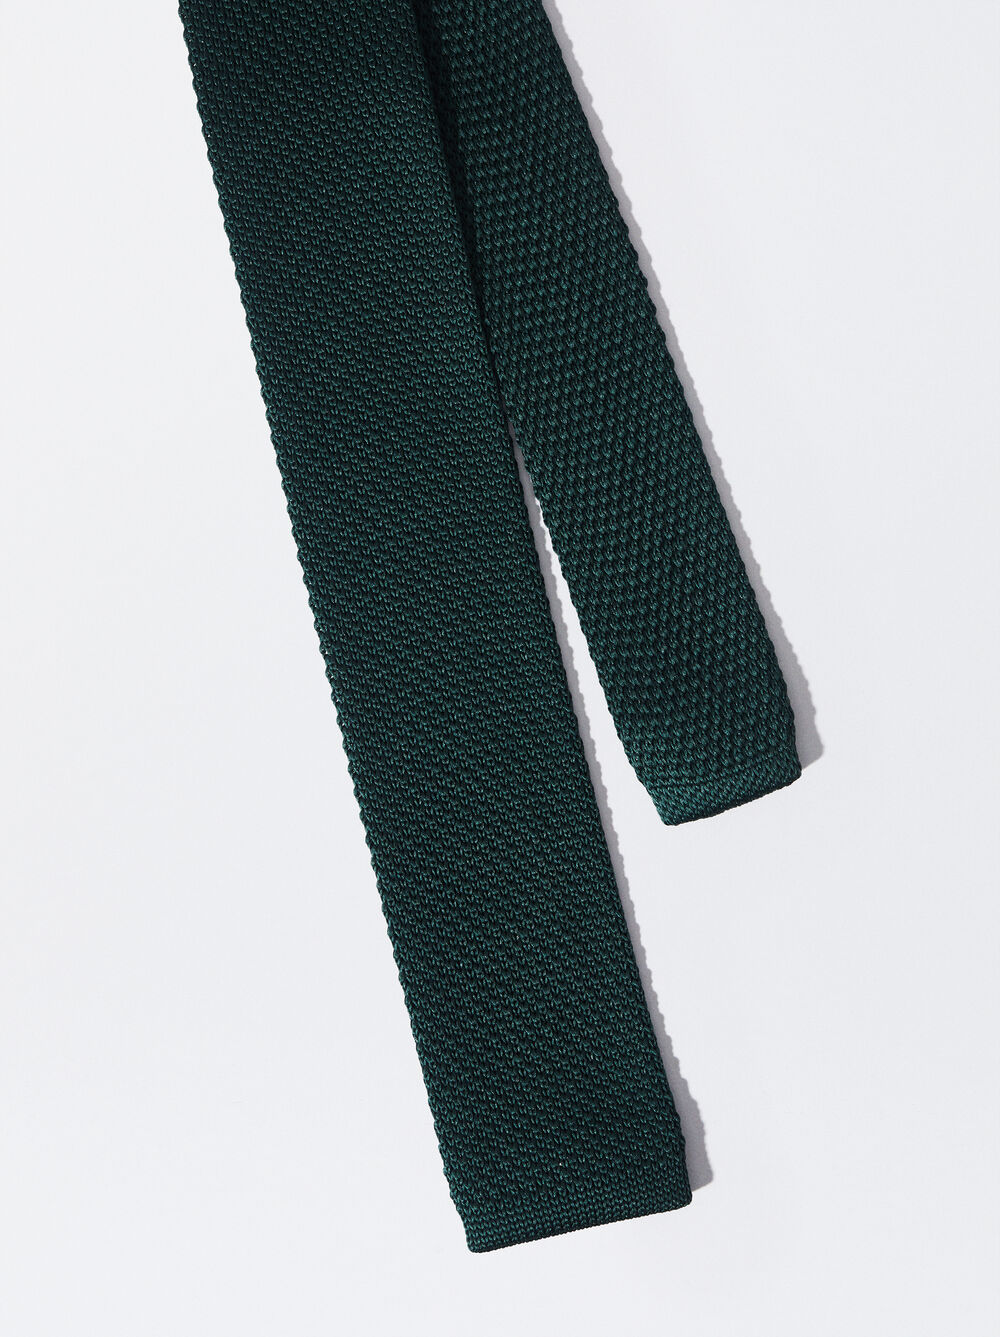 Cravate Texturée